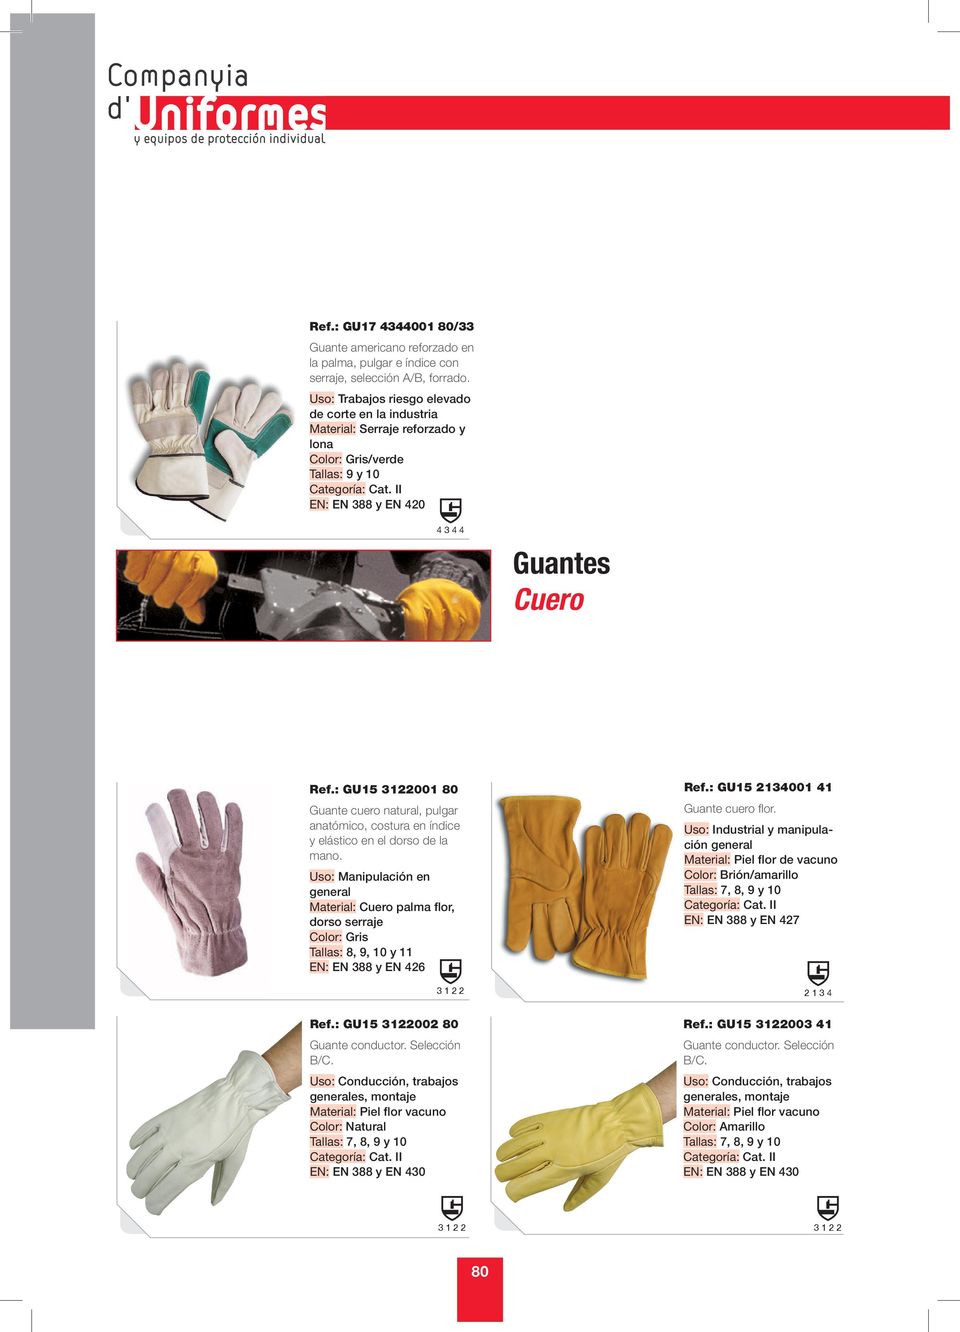 : GU15 3122001 80 Guante cuero natural, pulgar anatómico, costura en índice y elástico en el dorso de la mano.